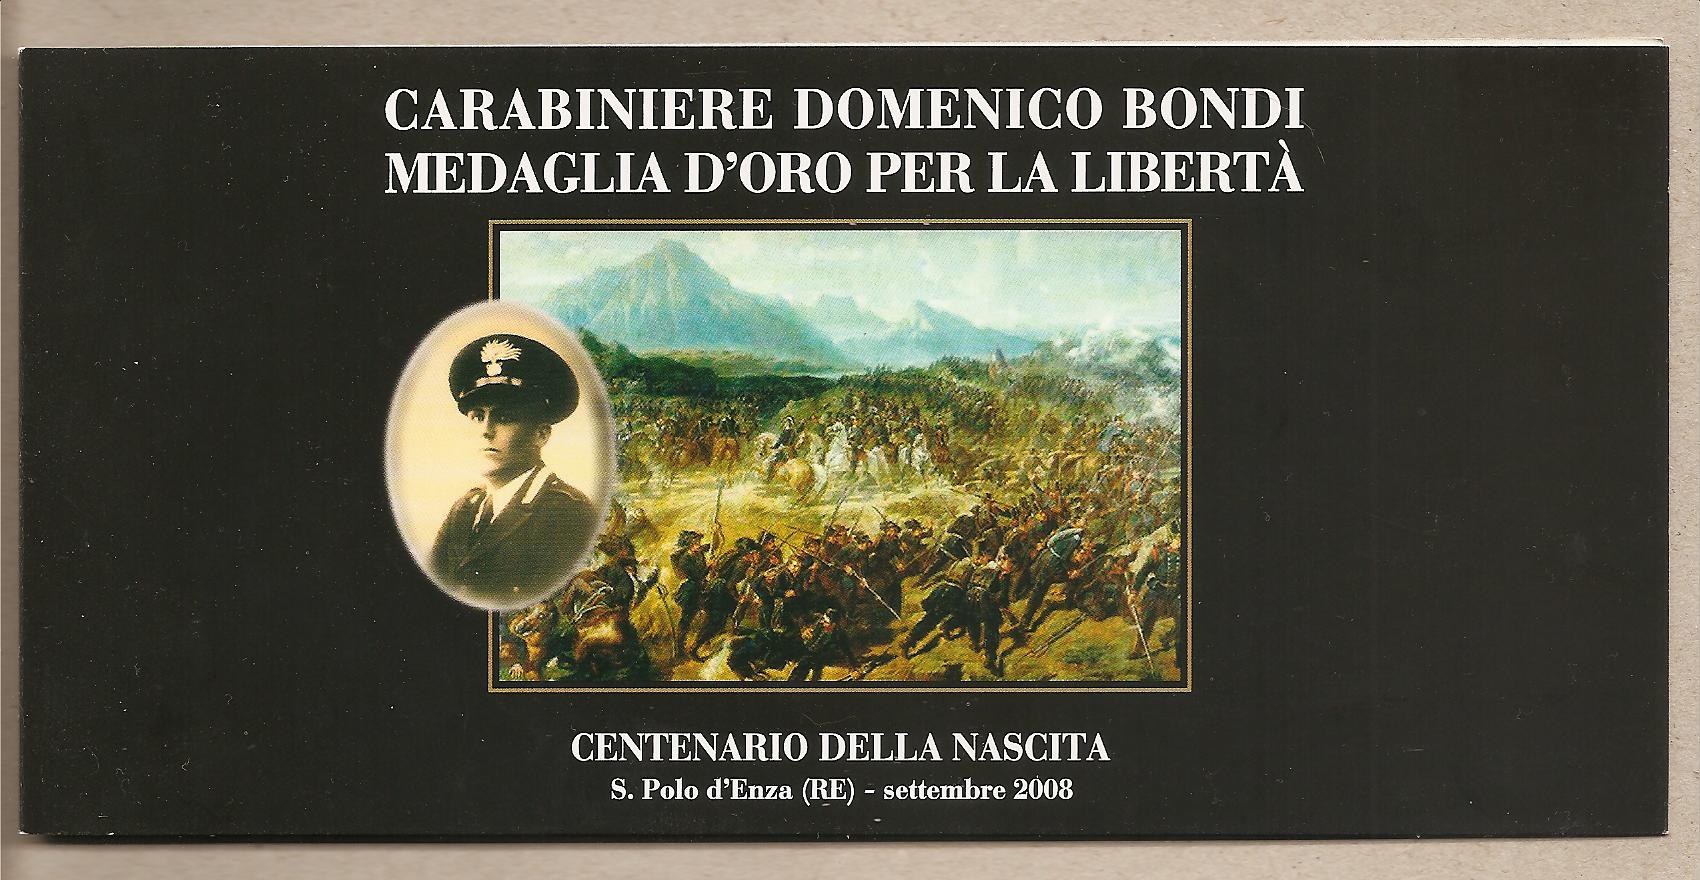 37545 - Invito alla mostra dedicata al Carabiniere Domenico Bondi M.O.V.M. alla memoria - 2008 * G